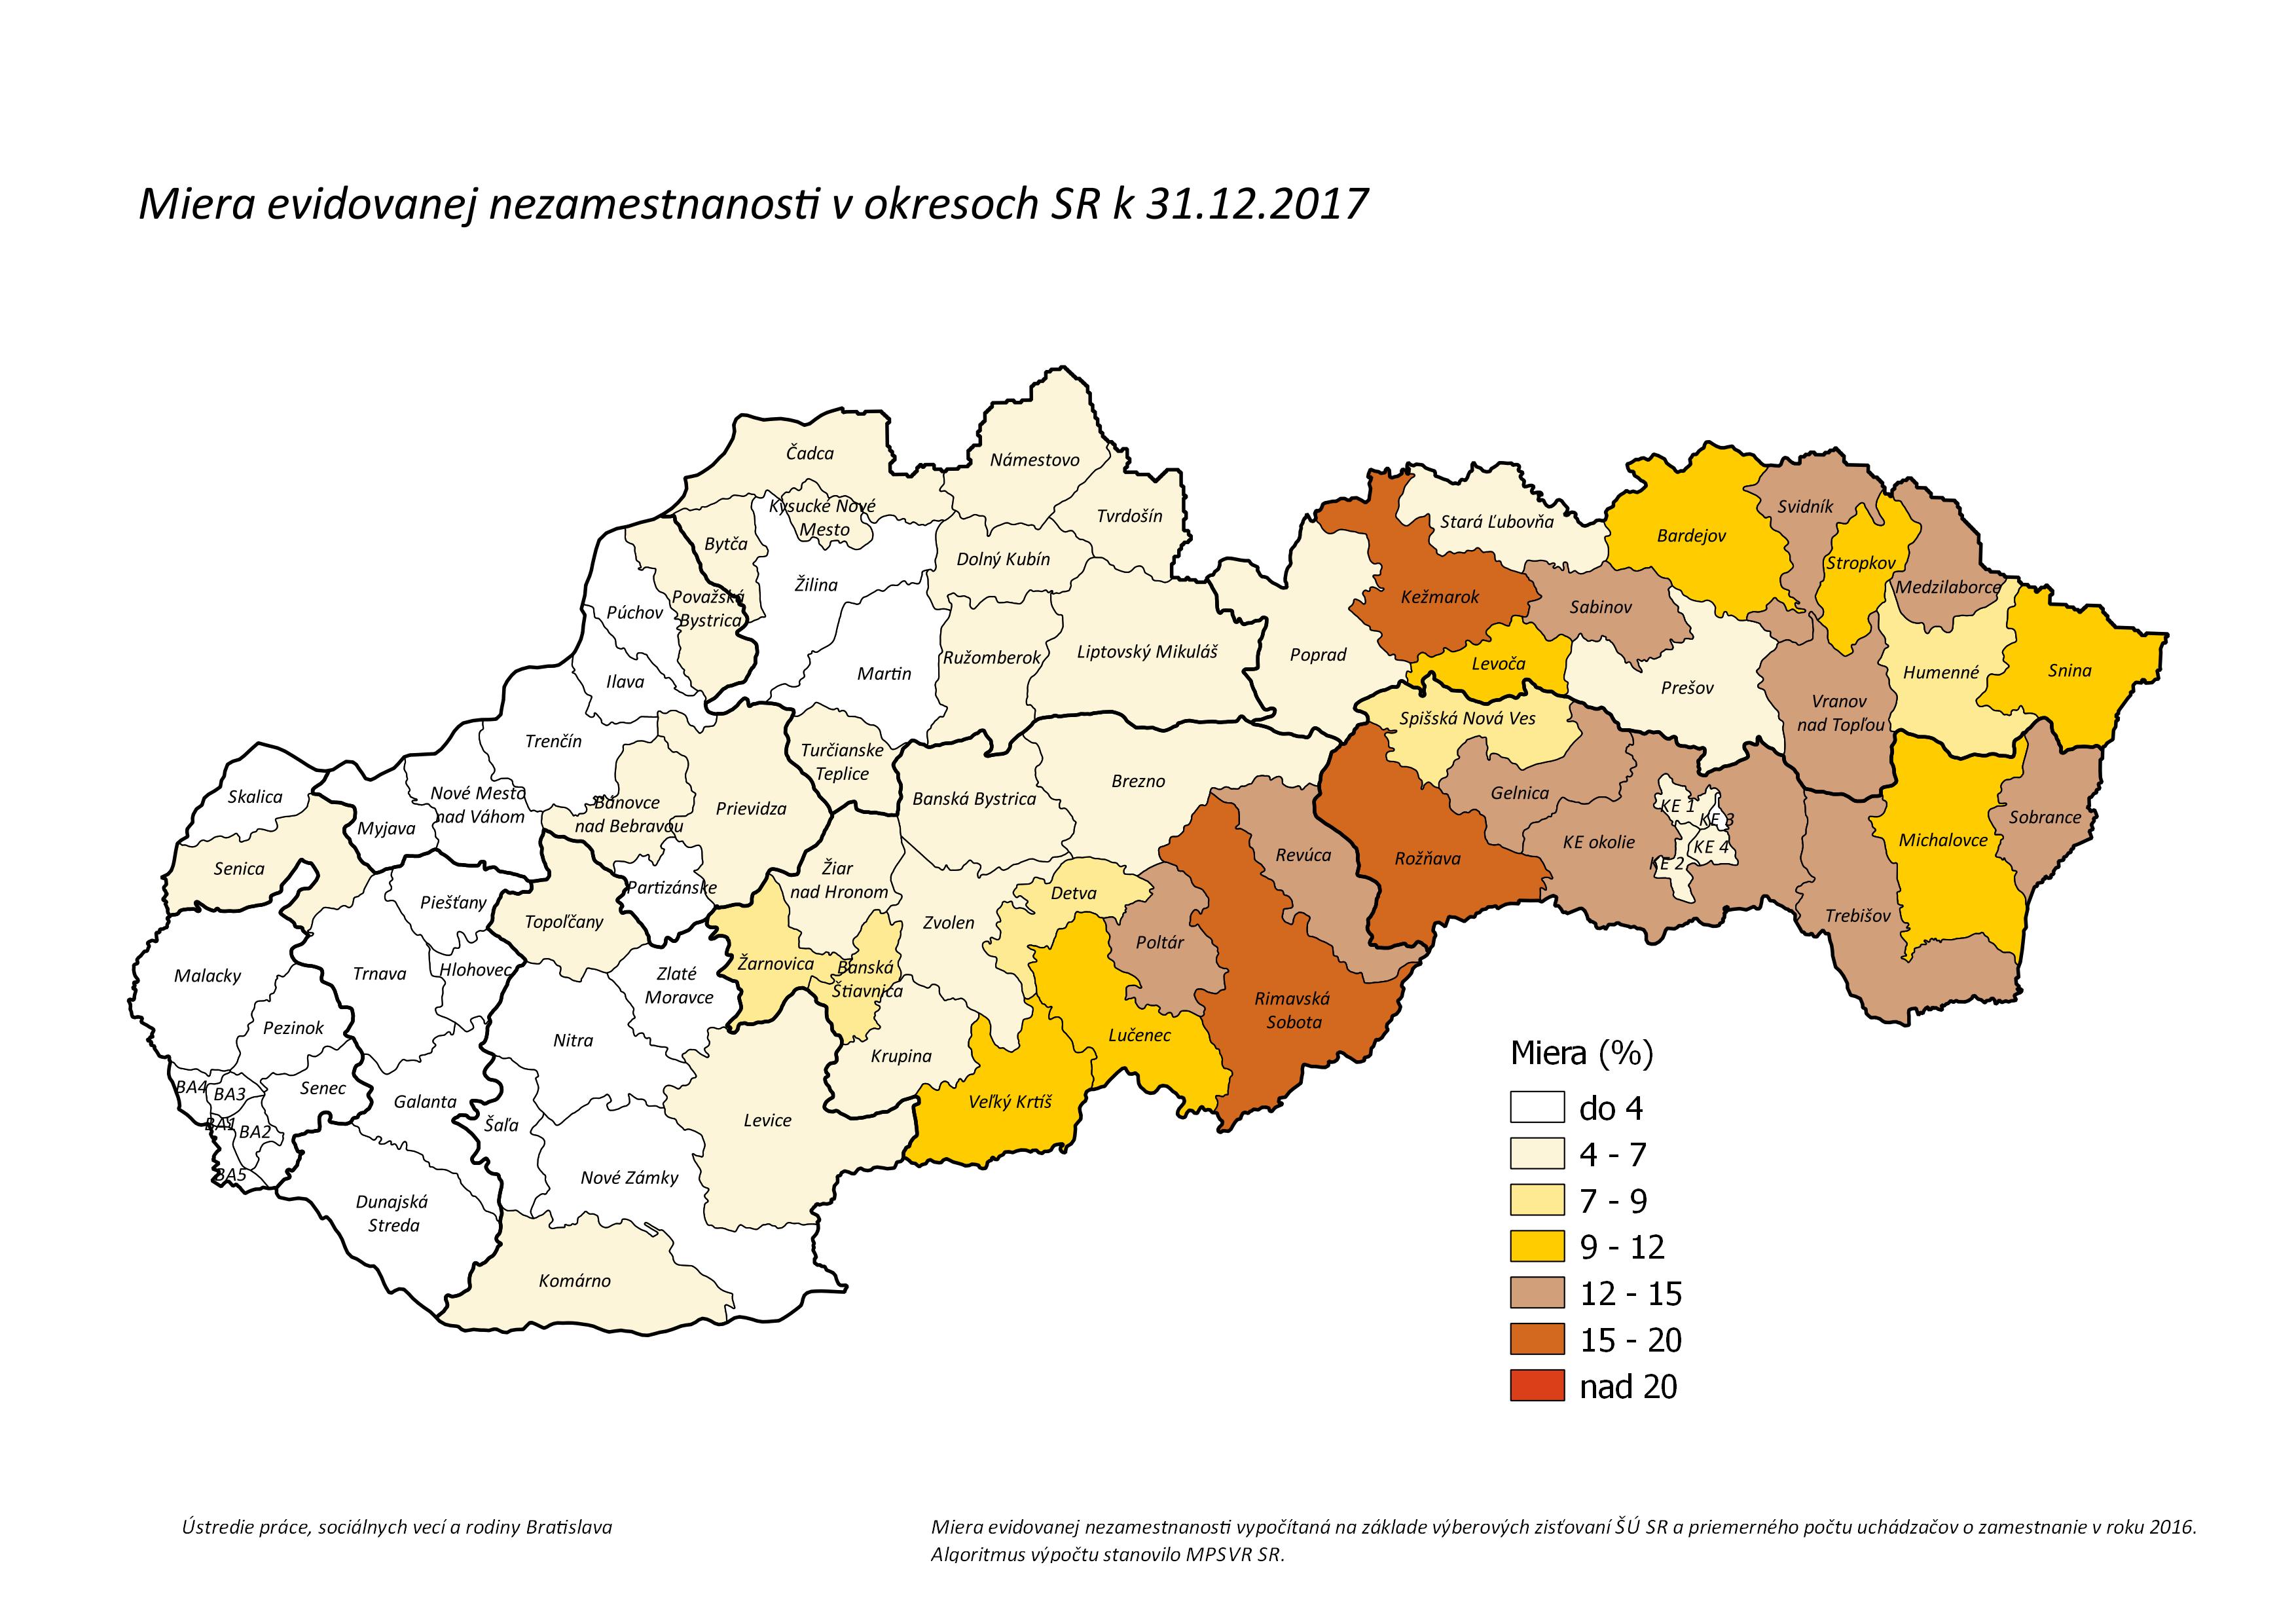 Miera evidovanej nezamestnanosti, nezamestnanosť v okresoch SR za december 2017